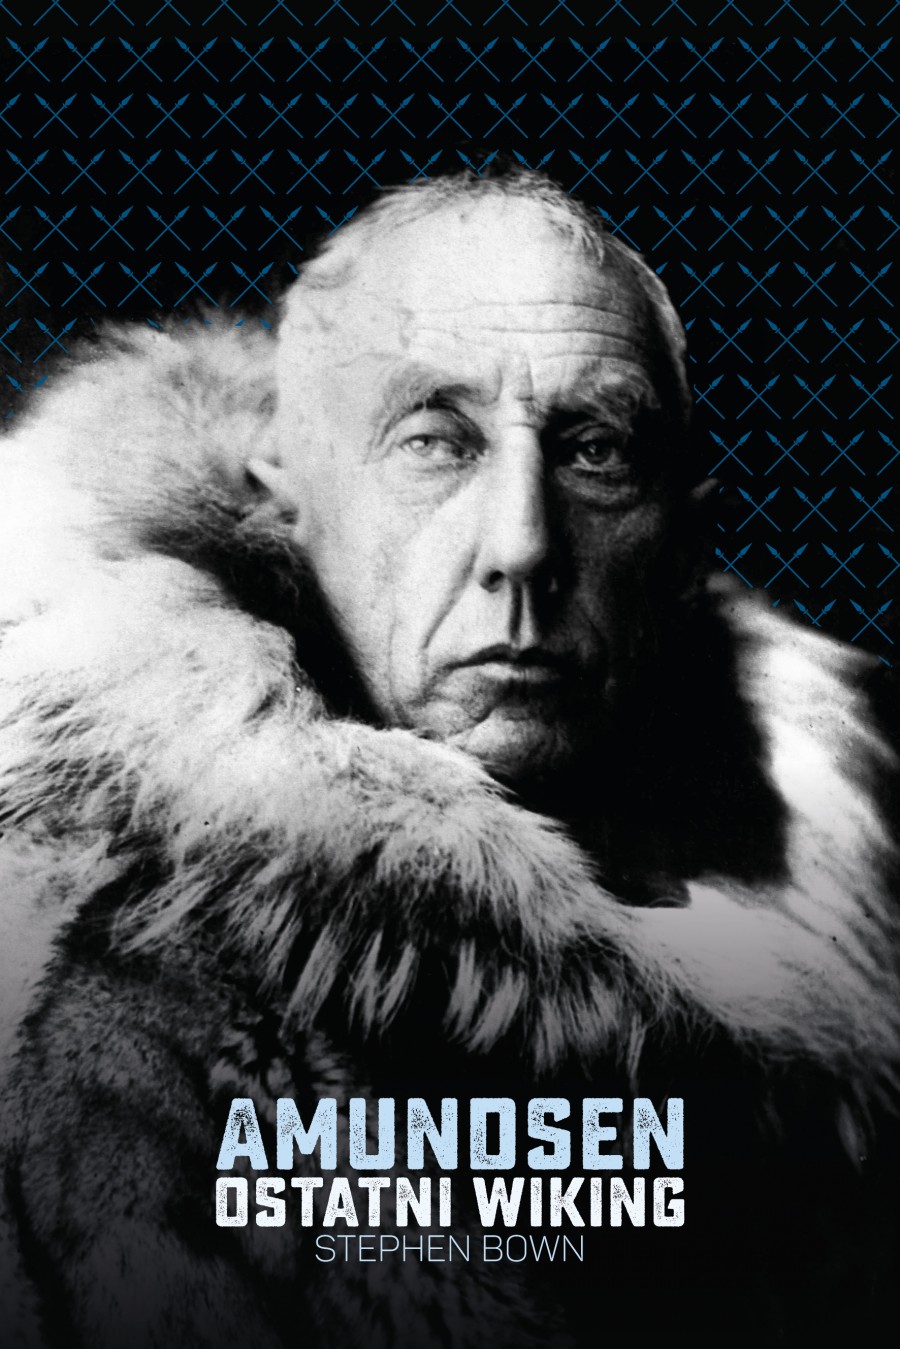 Okładka książki „Amundsen. Ostatni wiking” Stephena R. Bowna (fot. wydawnictwopoznanskie.com)